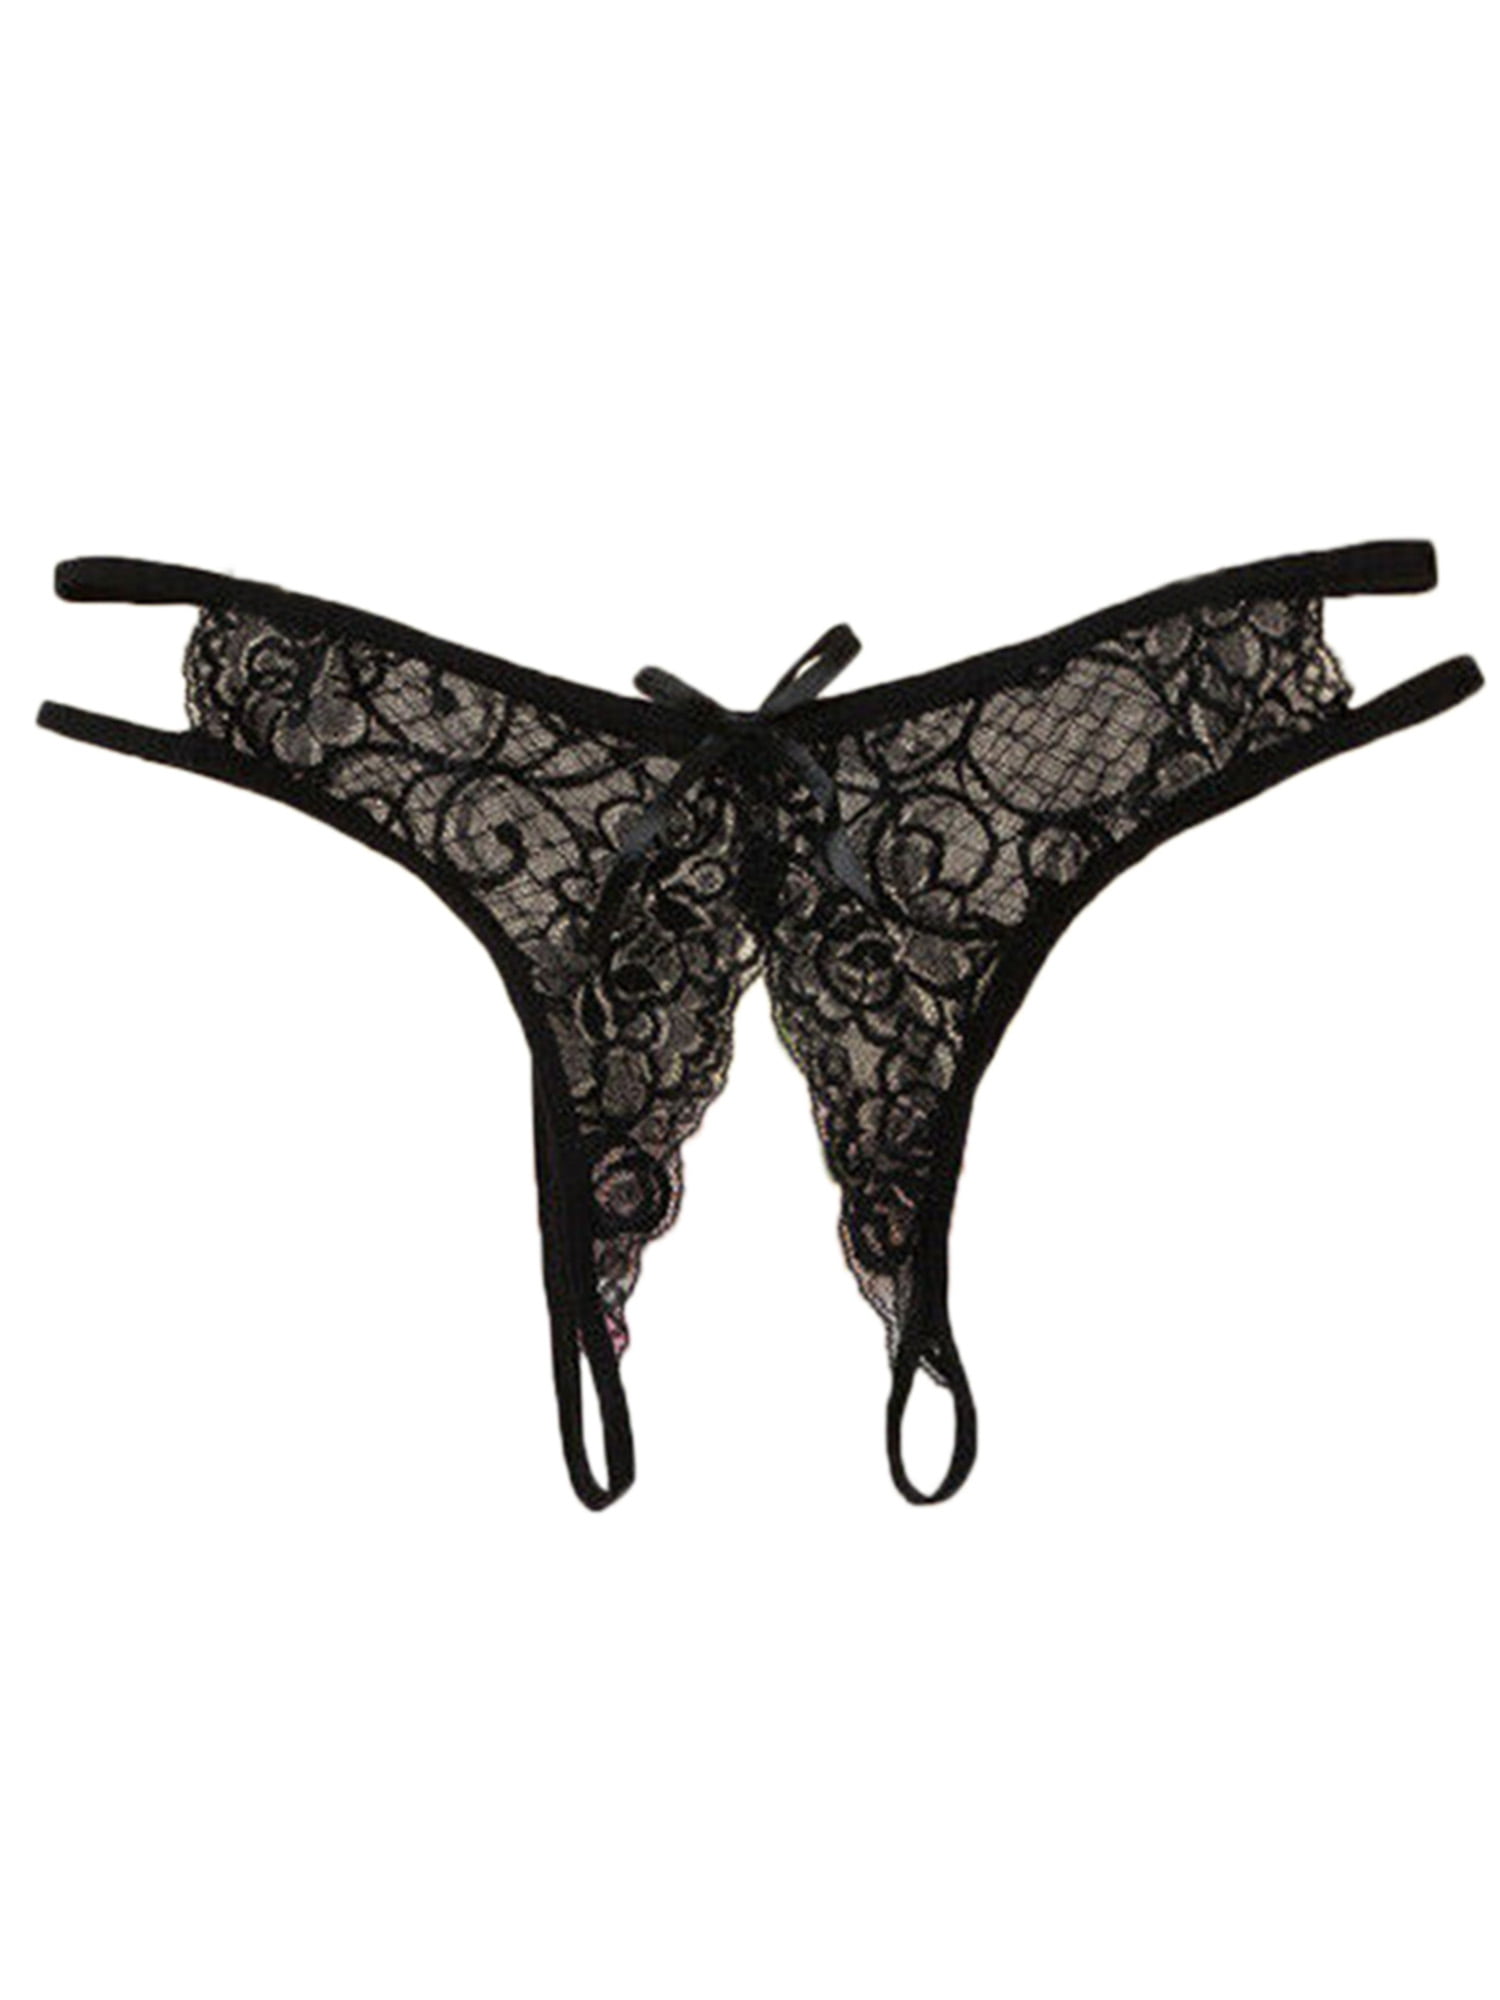 Women Sissy Ladies Lace G-string Briefs Panties Thong Lingerie Underwear Knicker